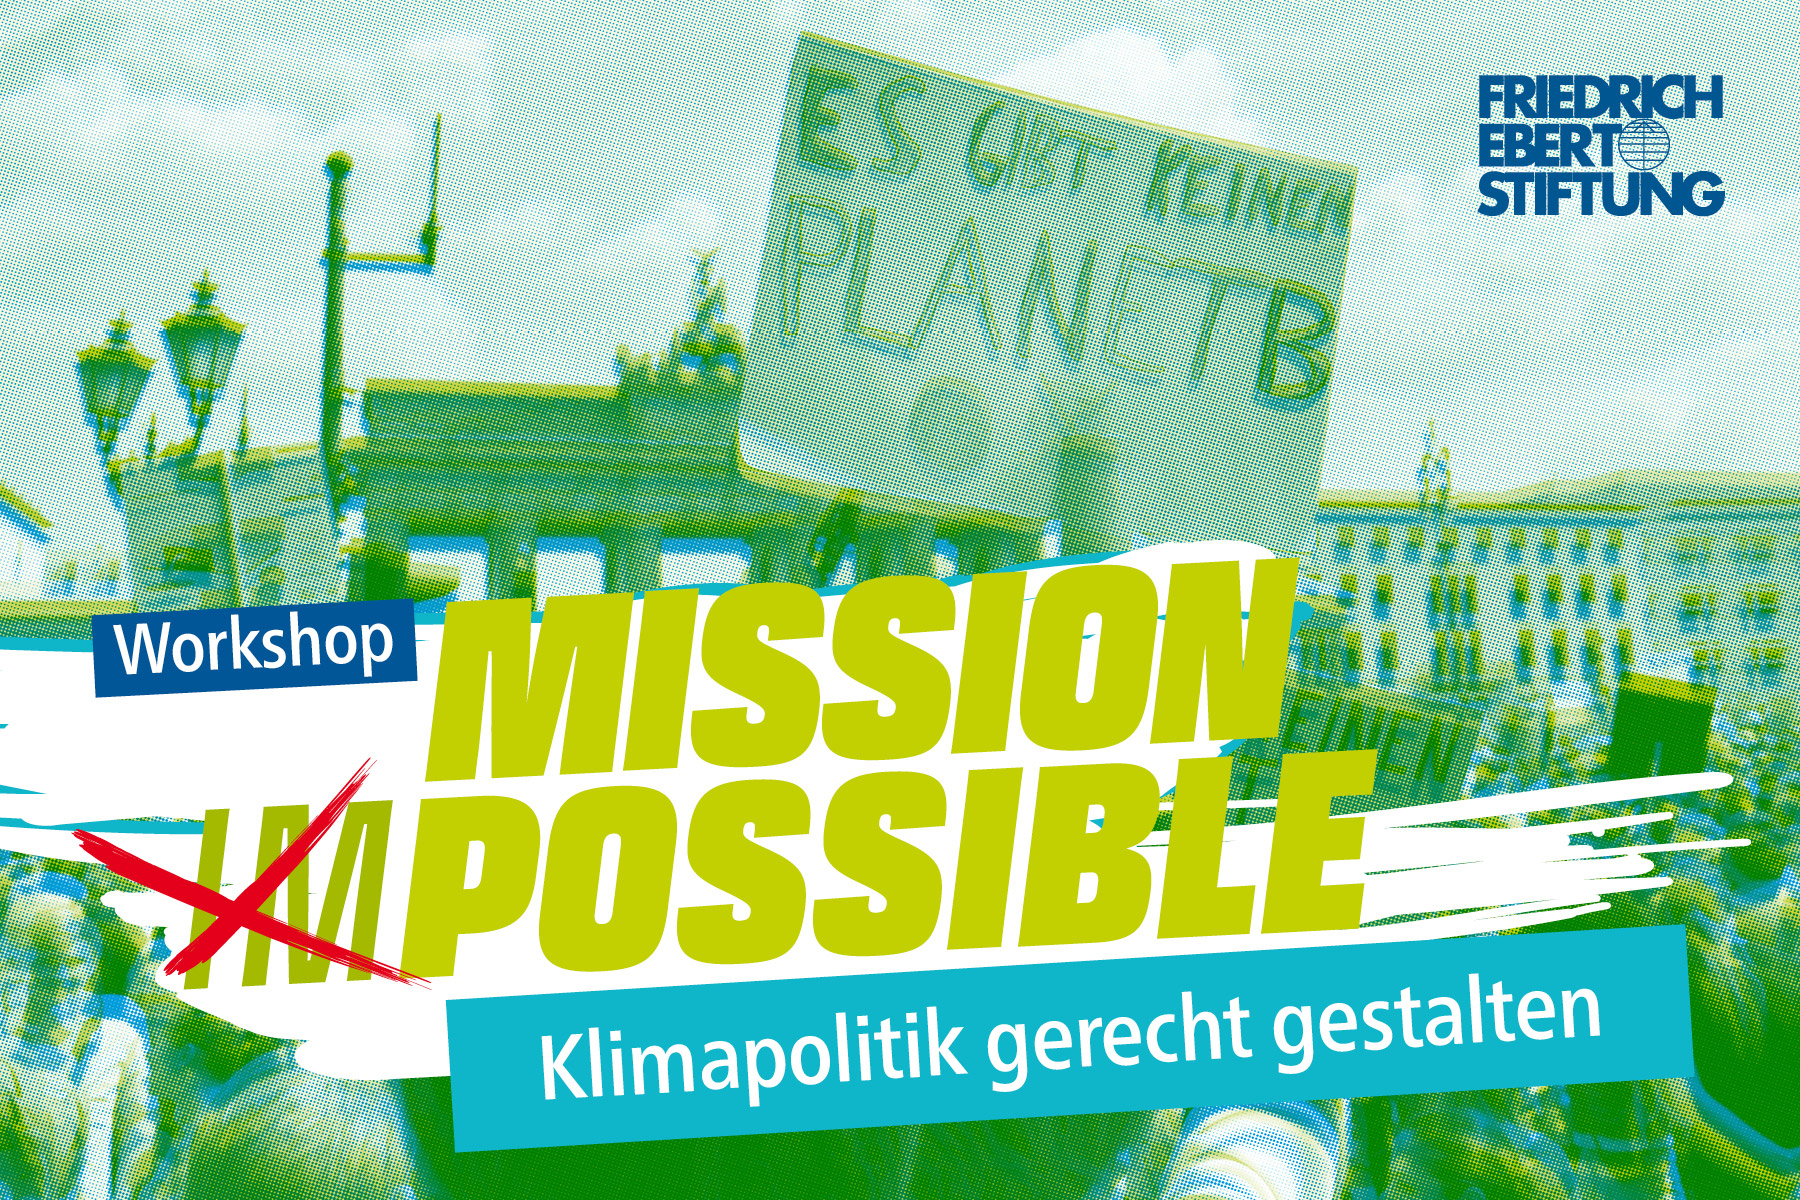 Demo in Berlin im Hintergrund, Titel "Mission possible" vorne